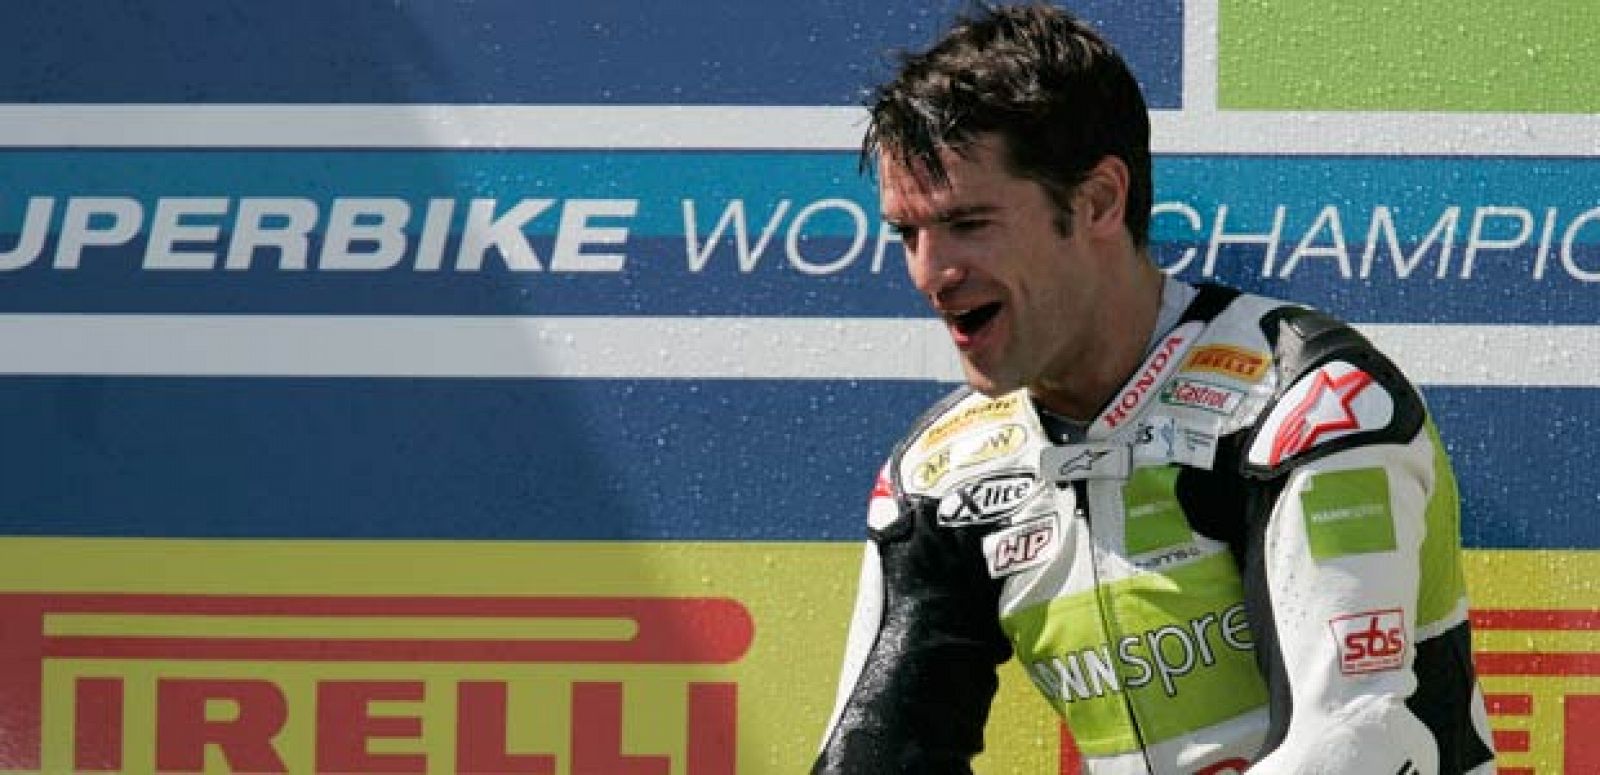 Carlos Checa se despide del Mundial de Superbike lo que resta de temporada.